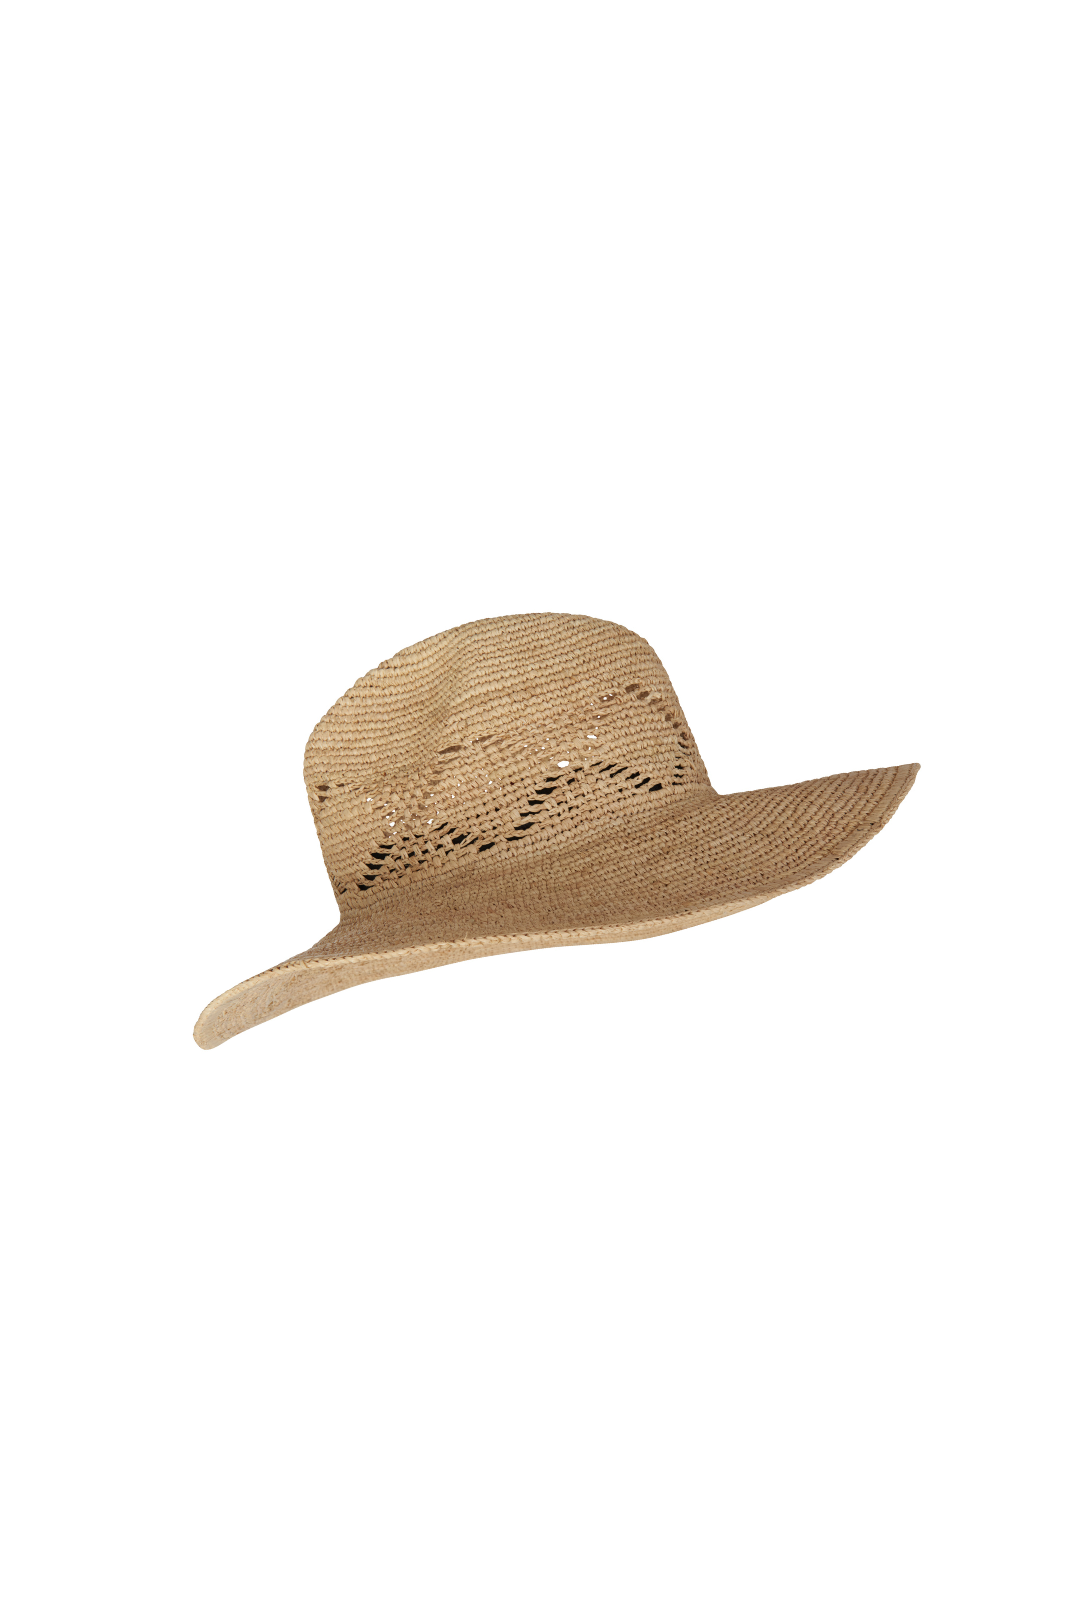 Bahamas Raffia Hat - Natural